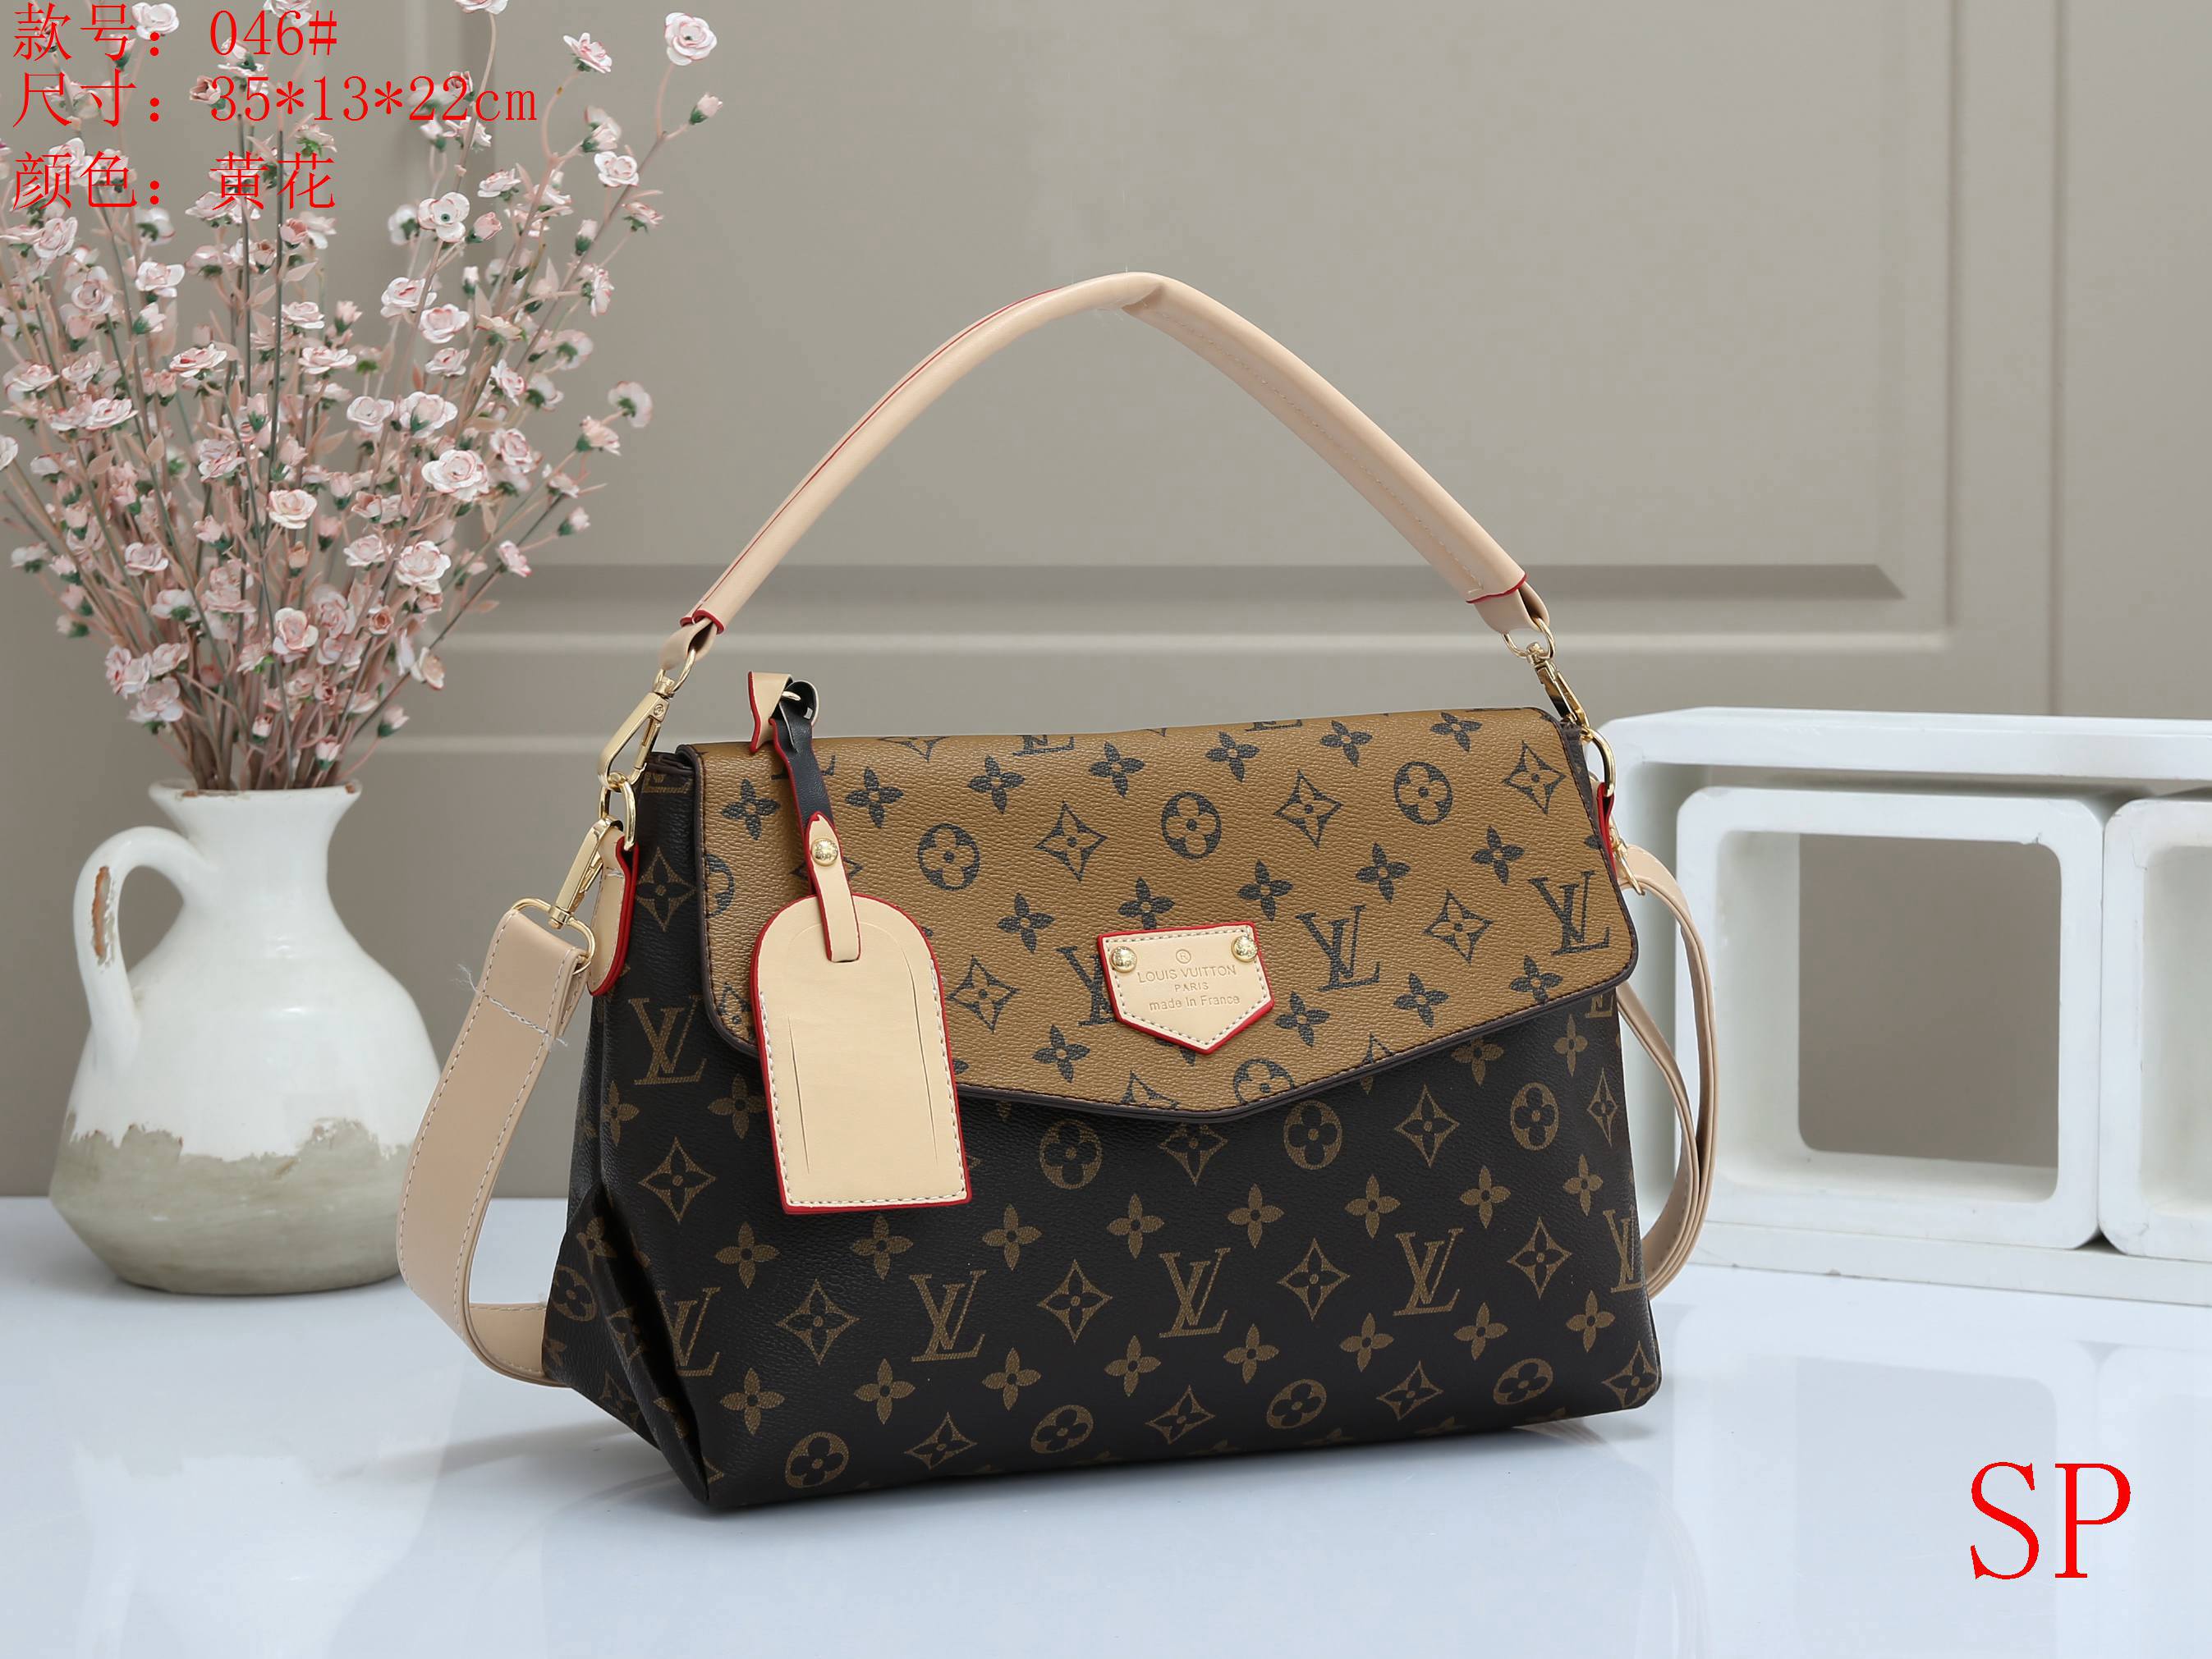 US$ 22.00 - LV_handbag_22_SP_230214_a_4 fashion designer replica luxury ...